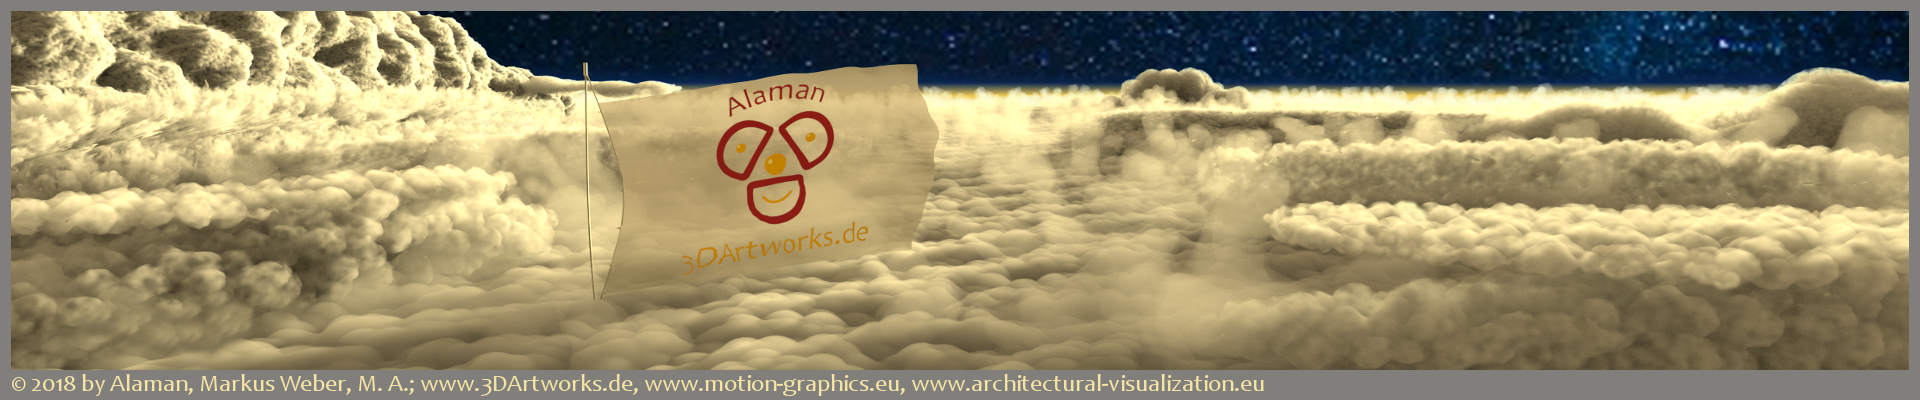 Logos: drapeau avec le logo Alaman 3D Artworks devant les nuages